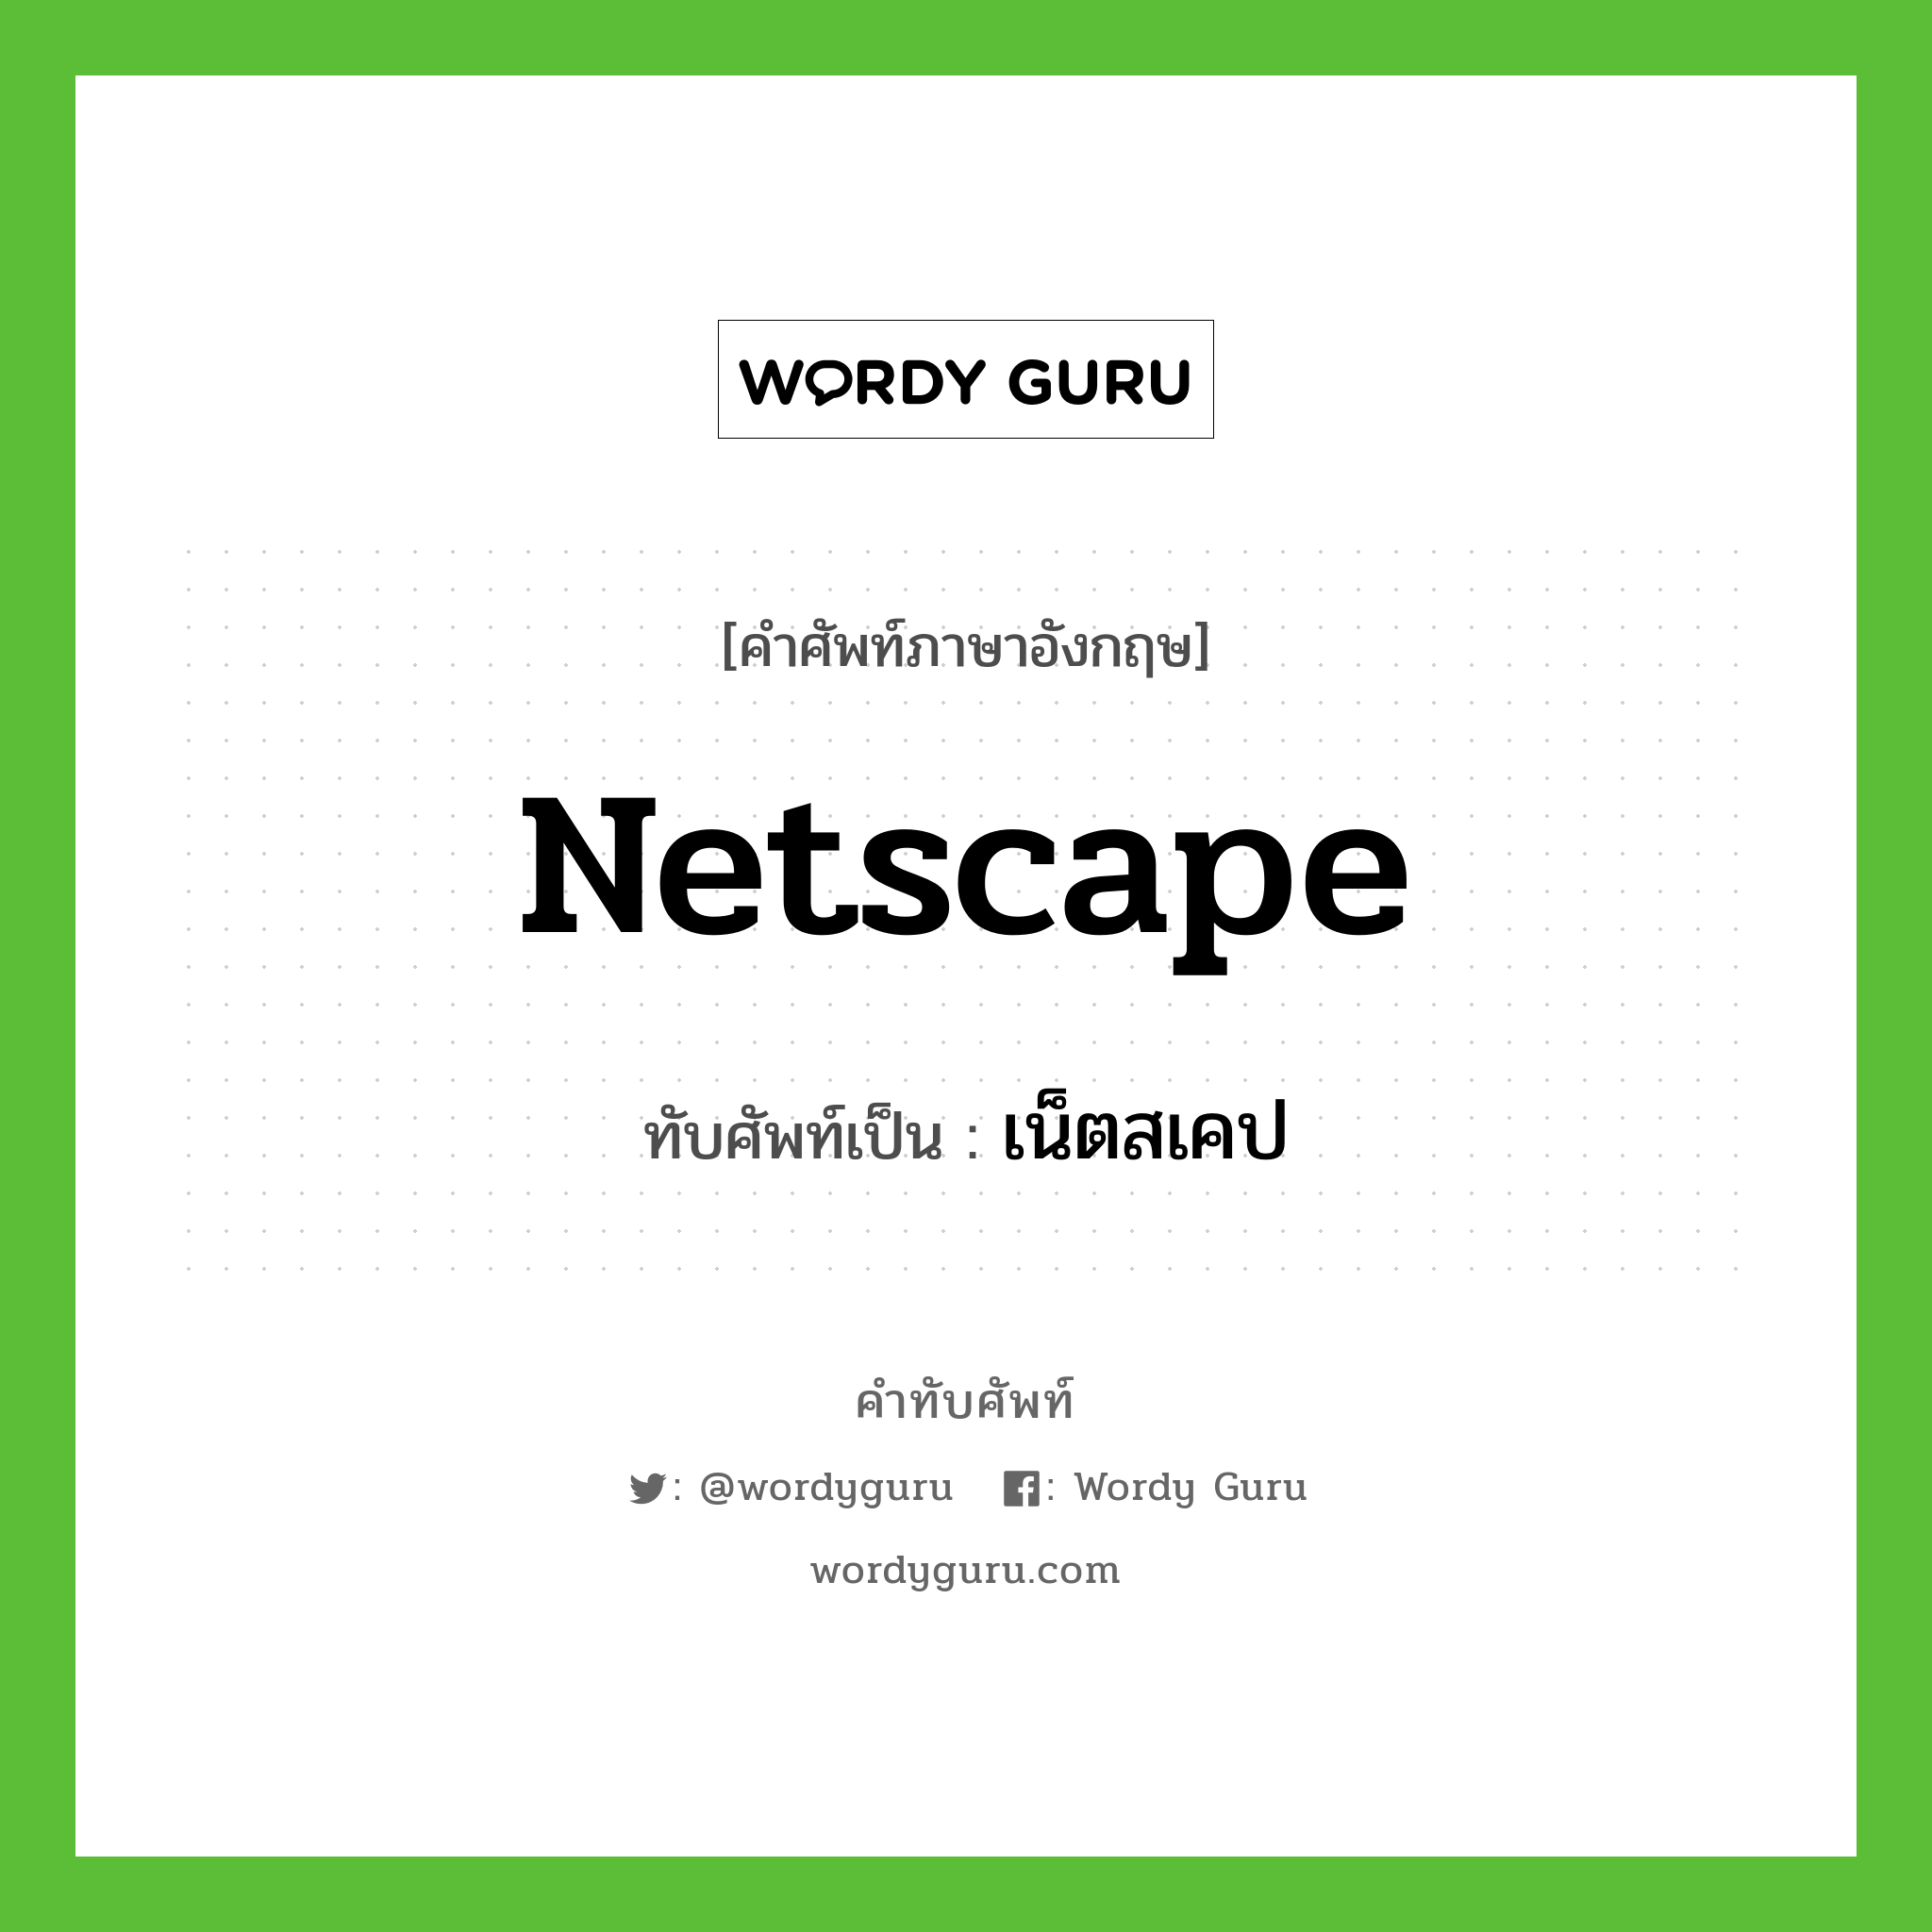 Netscape เขียนเป็นคำไทยว่าอะไร?, คำศัพท์ภาษาอังกฤษ Netscape ทับศัพท์เป็น เน็ตสเคป